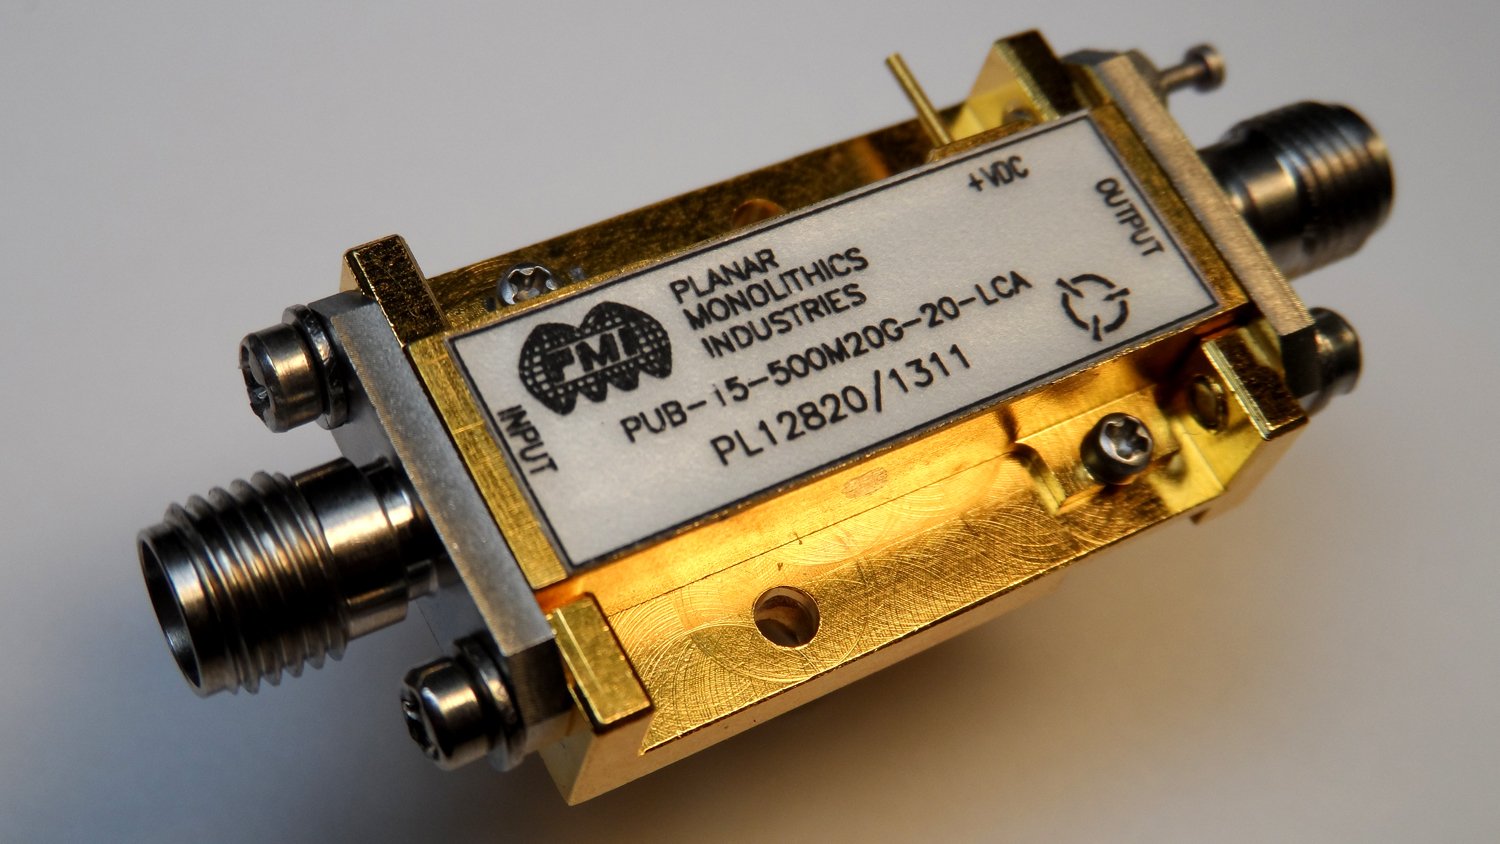 PUB-15-500M20G-20-LCA Low Noise Amplifier